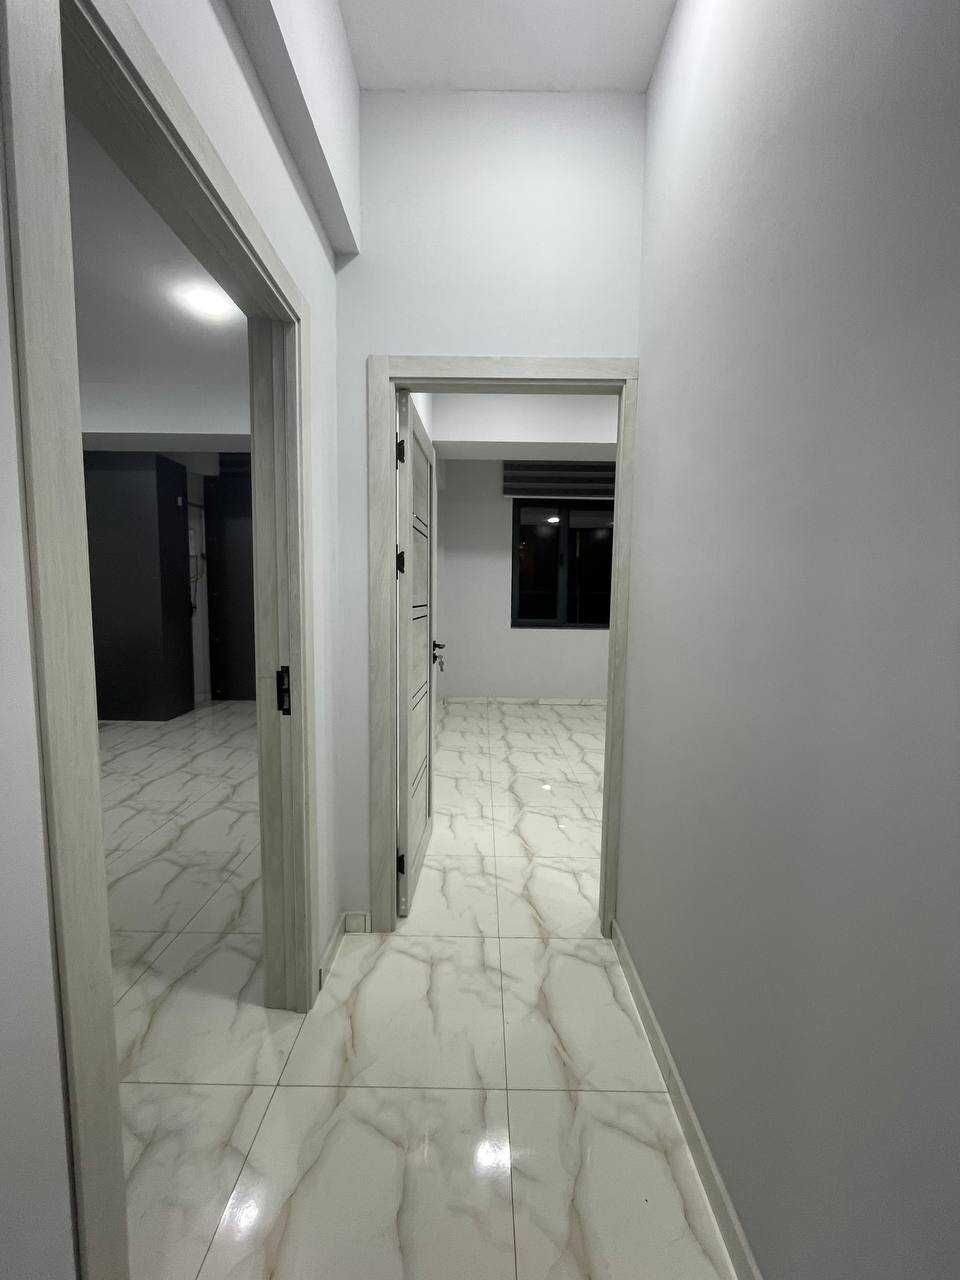 Аренда помещения 110м² - 4 комнаты + парковка (ул.Бабура)